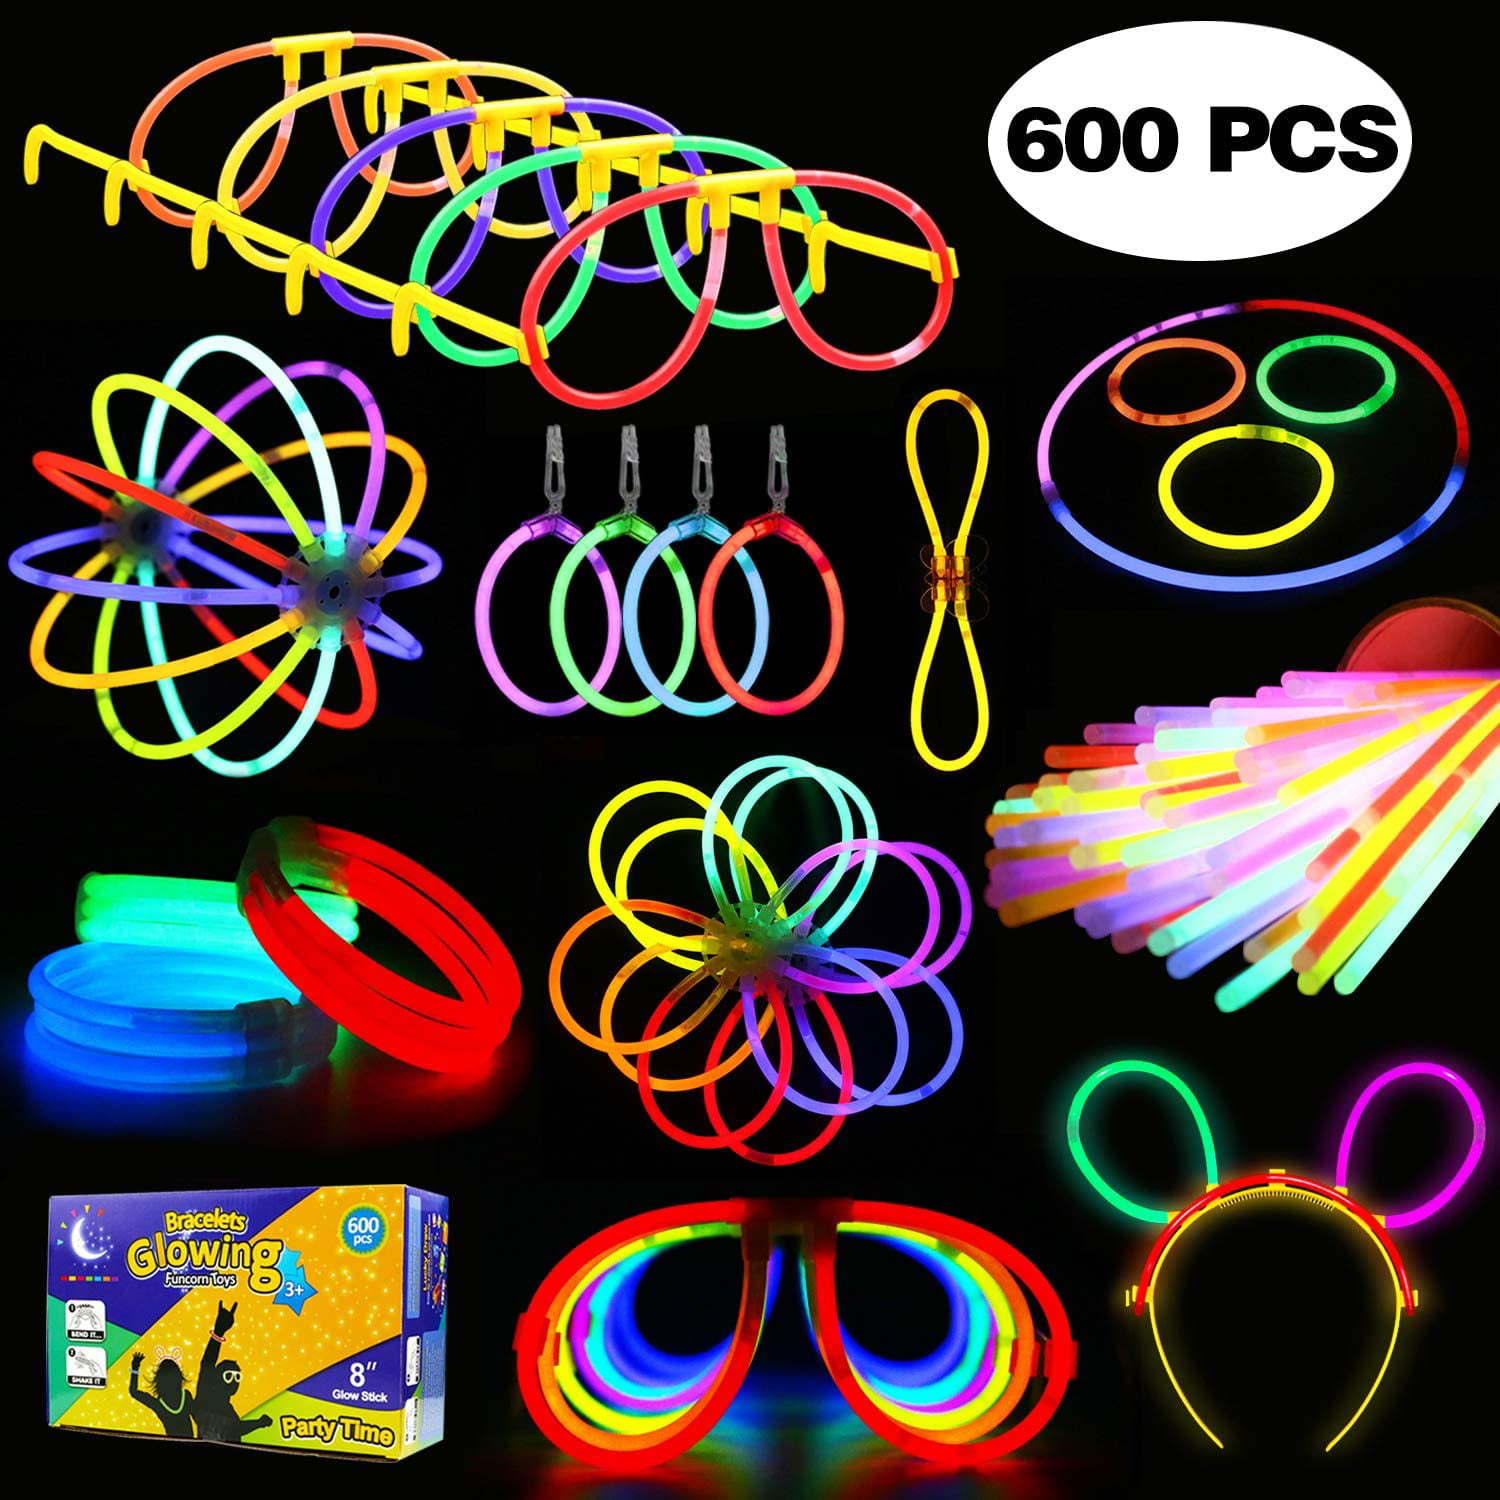 40 Pcs Light Up Glow Sticks and Connectors Neon Assorted Colors 8" Bracelet